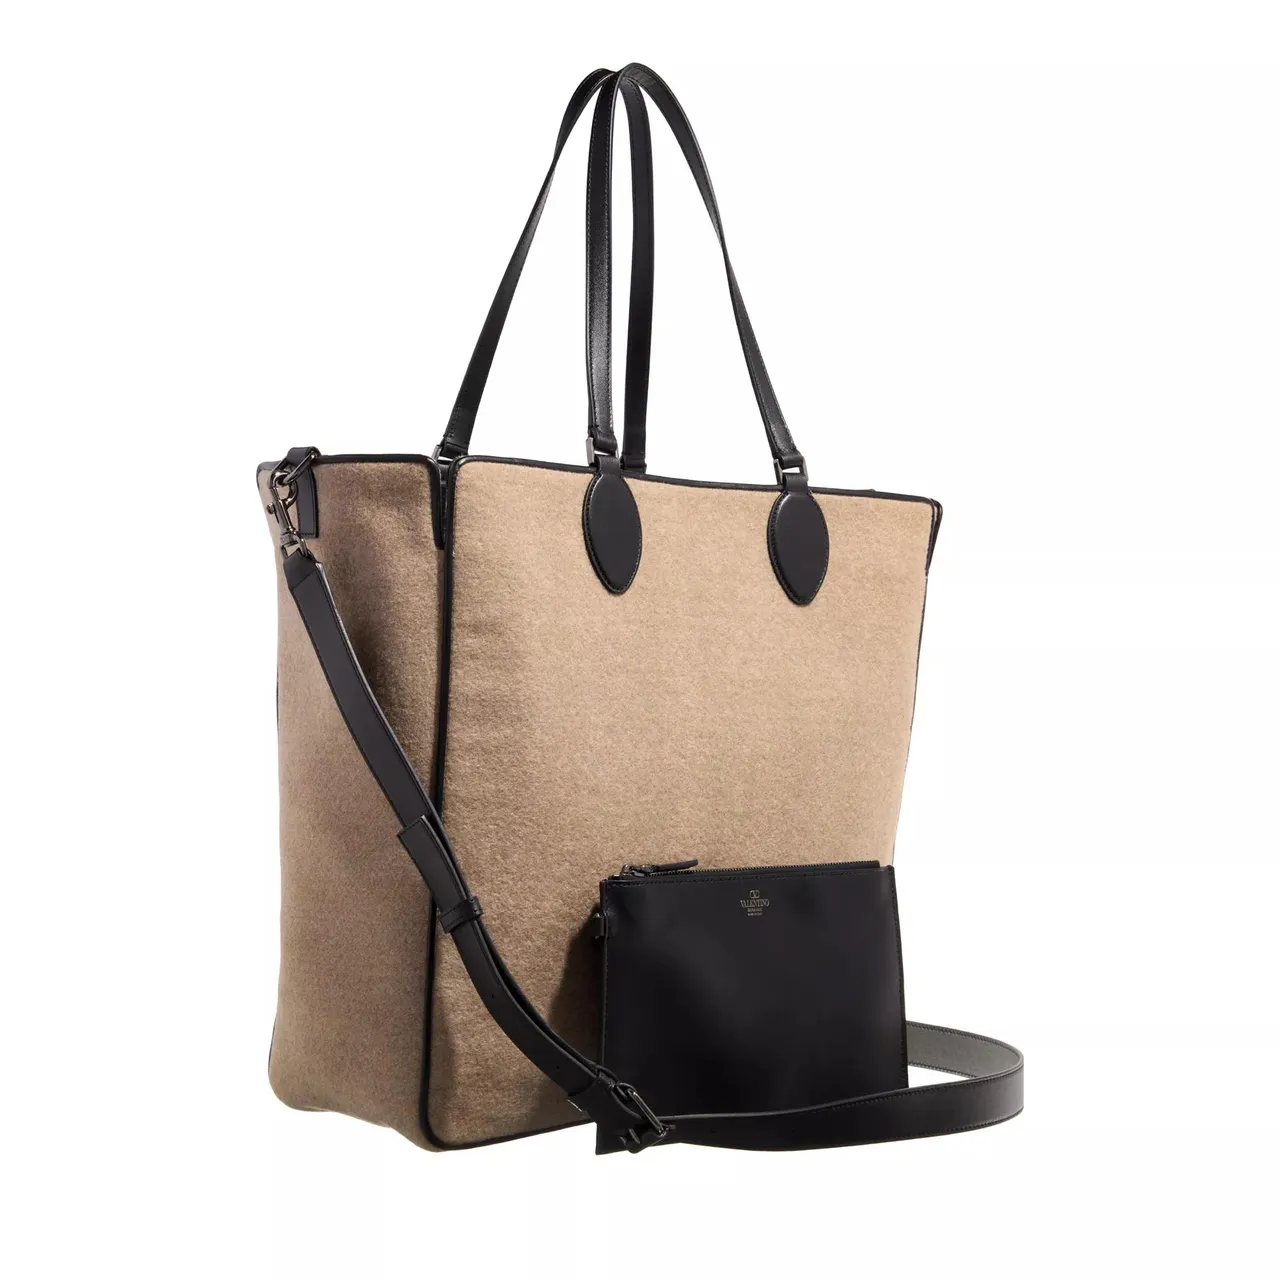 Valentino Garavani Shopper - Big Tote Bag With Logo - Gr. unisize - in Beige - für Damen